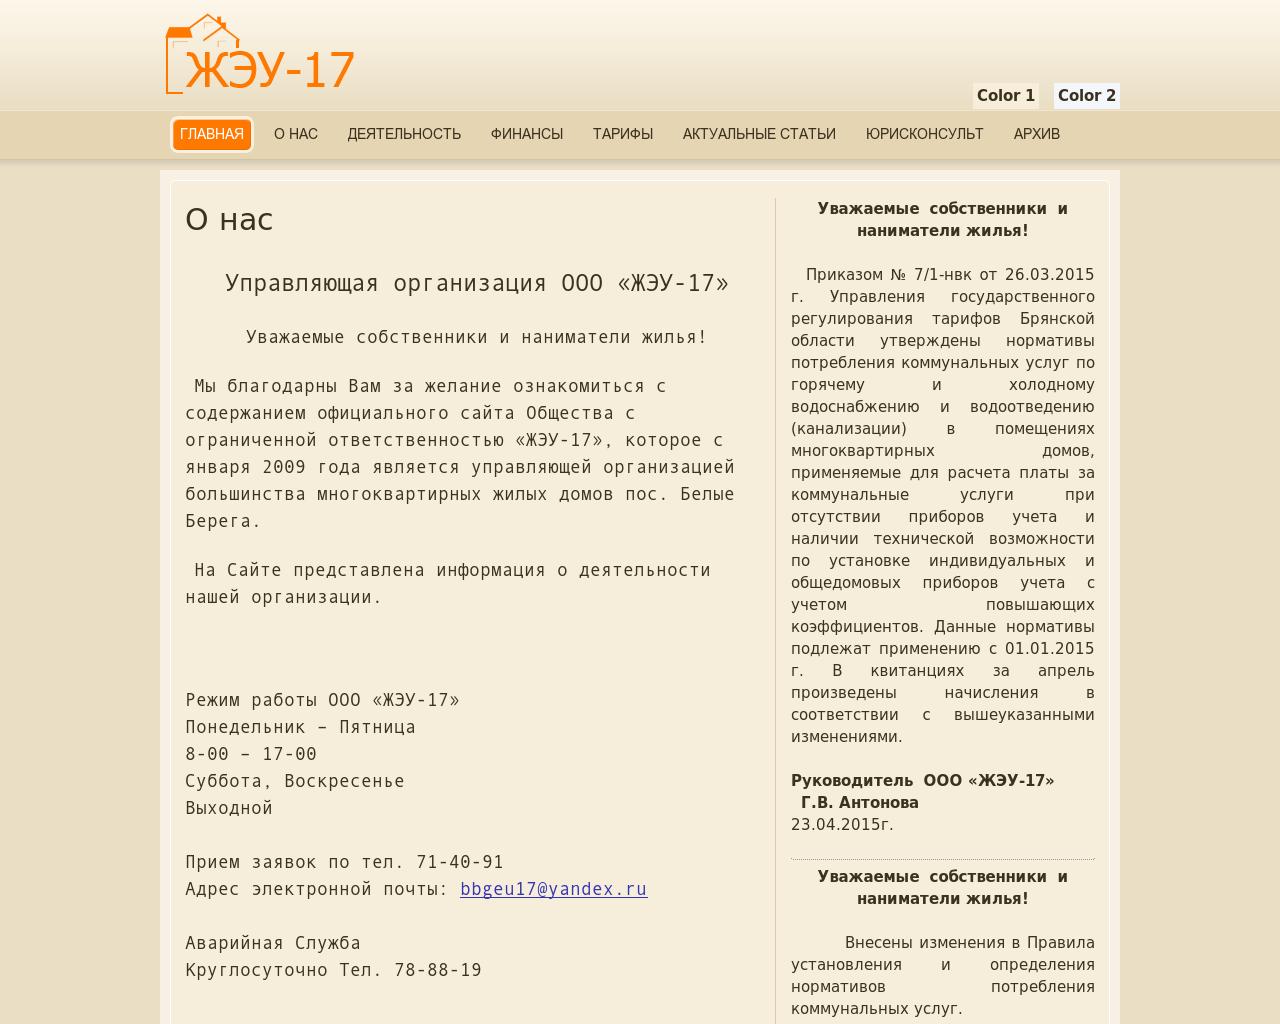 Изображение сайта jeu17.ru в разрешении 1280x1024